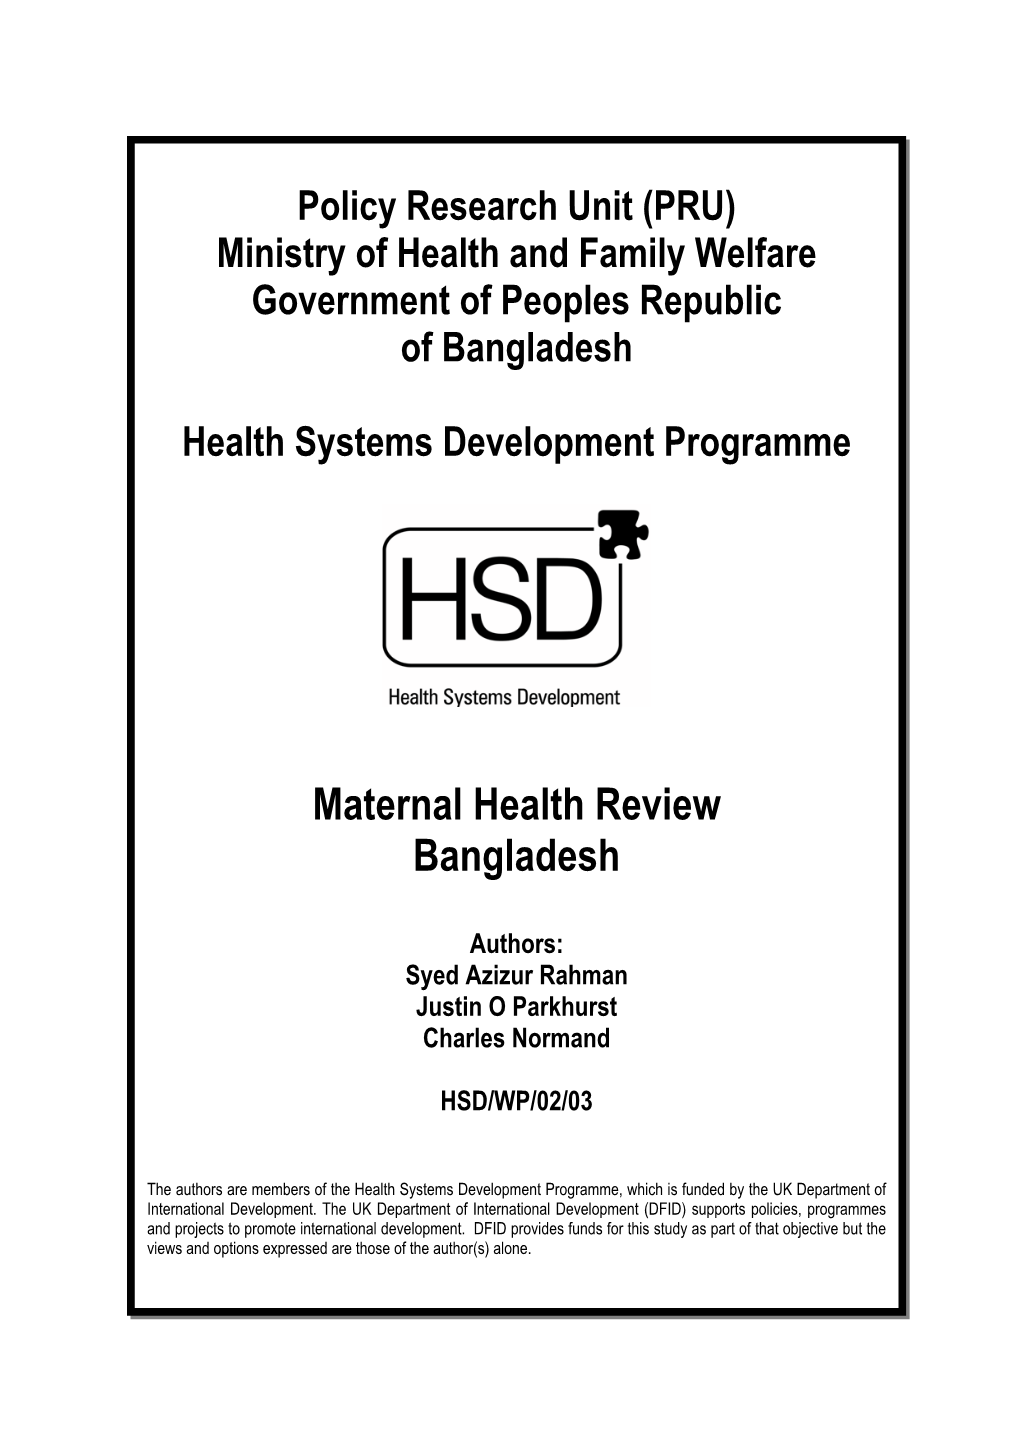 Maternal Health Review Bangladesh